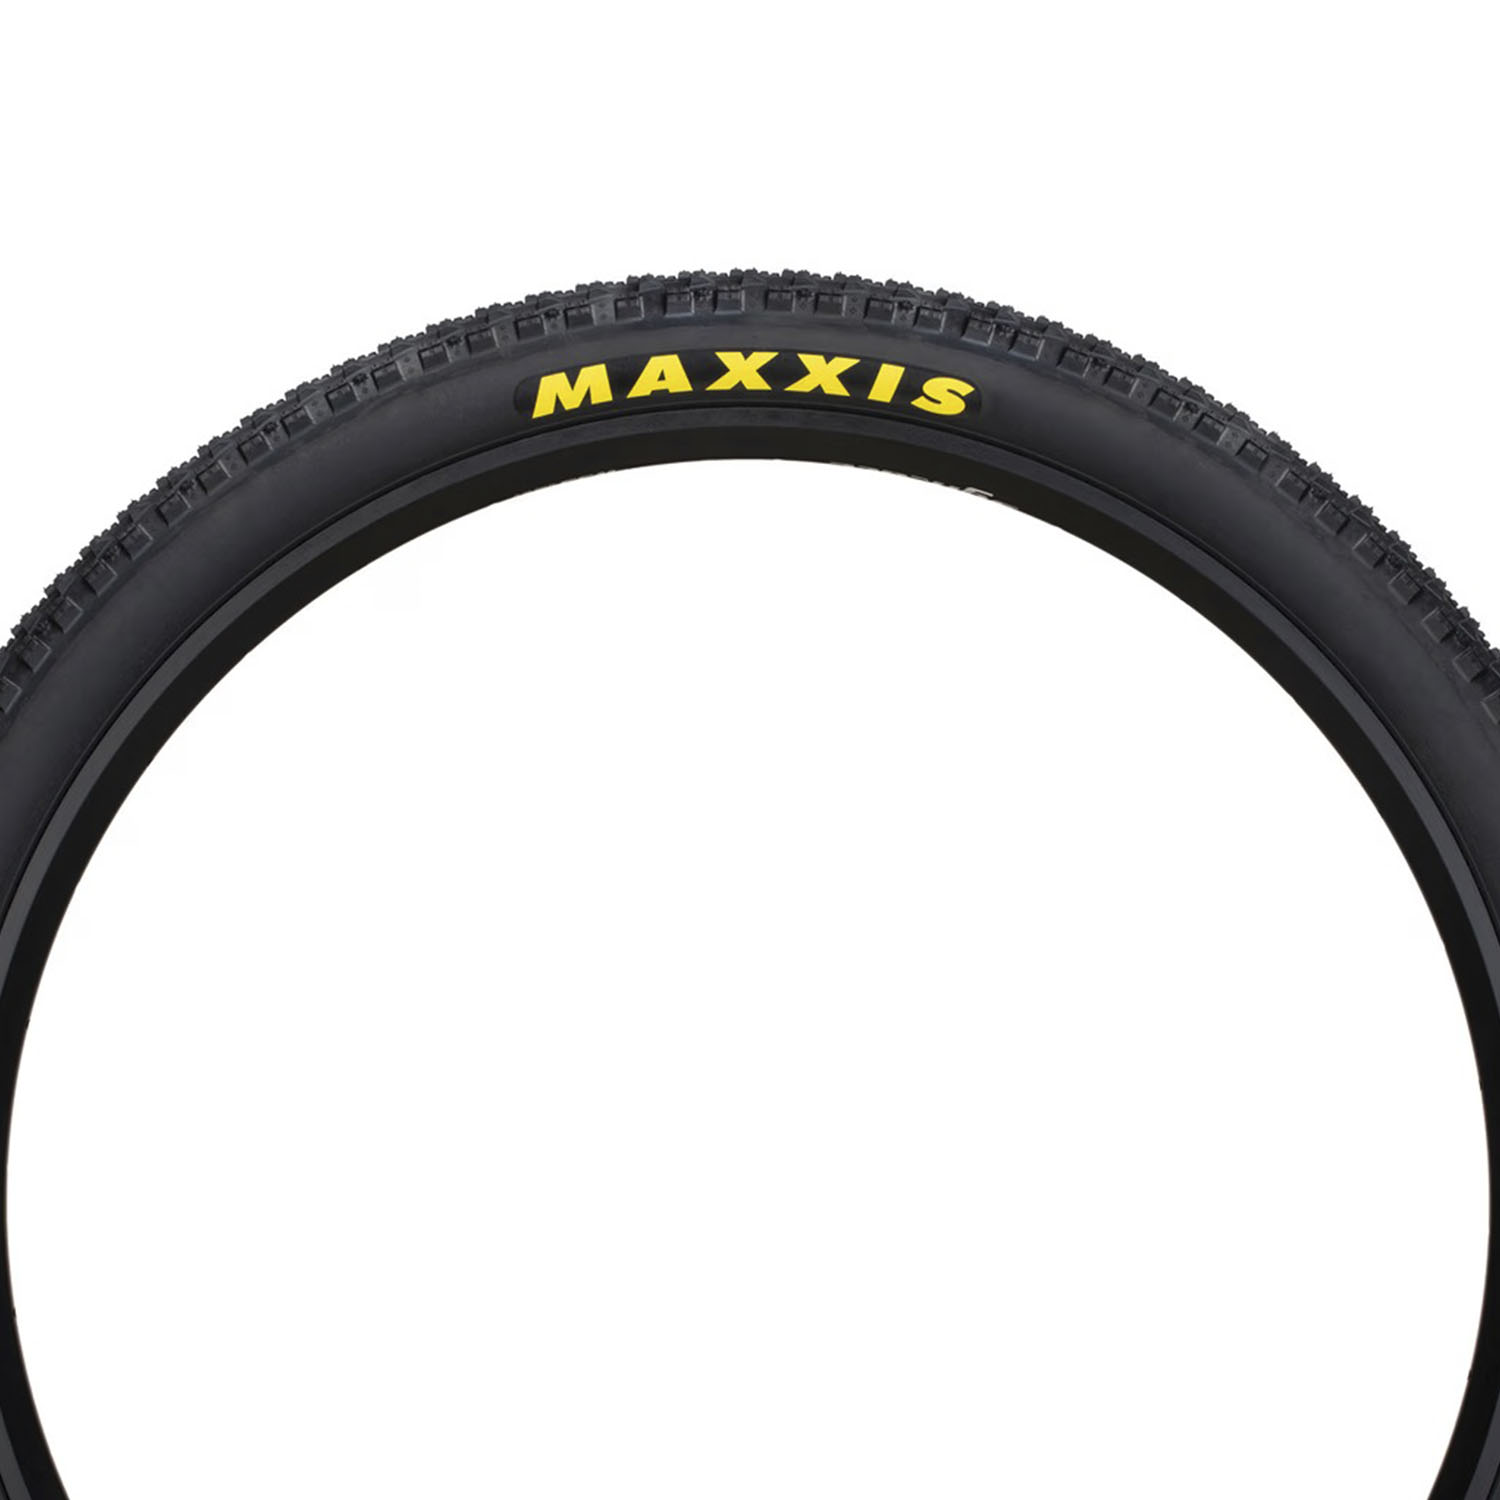 Велопокрышка Maxxis Crossmark II 26x2.1 52-559